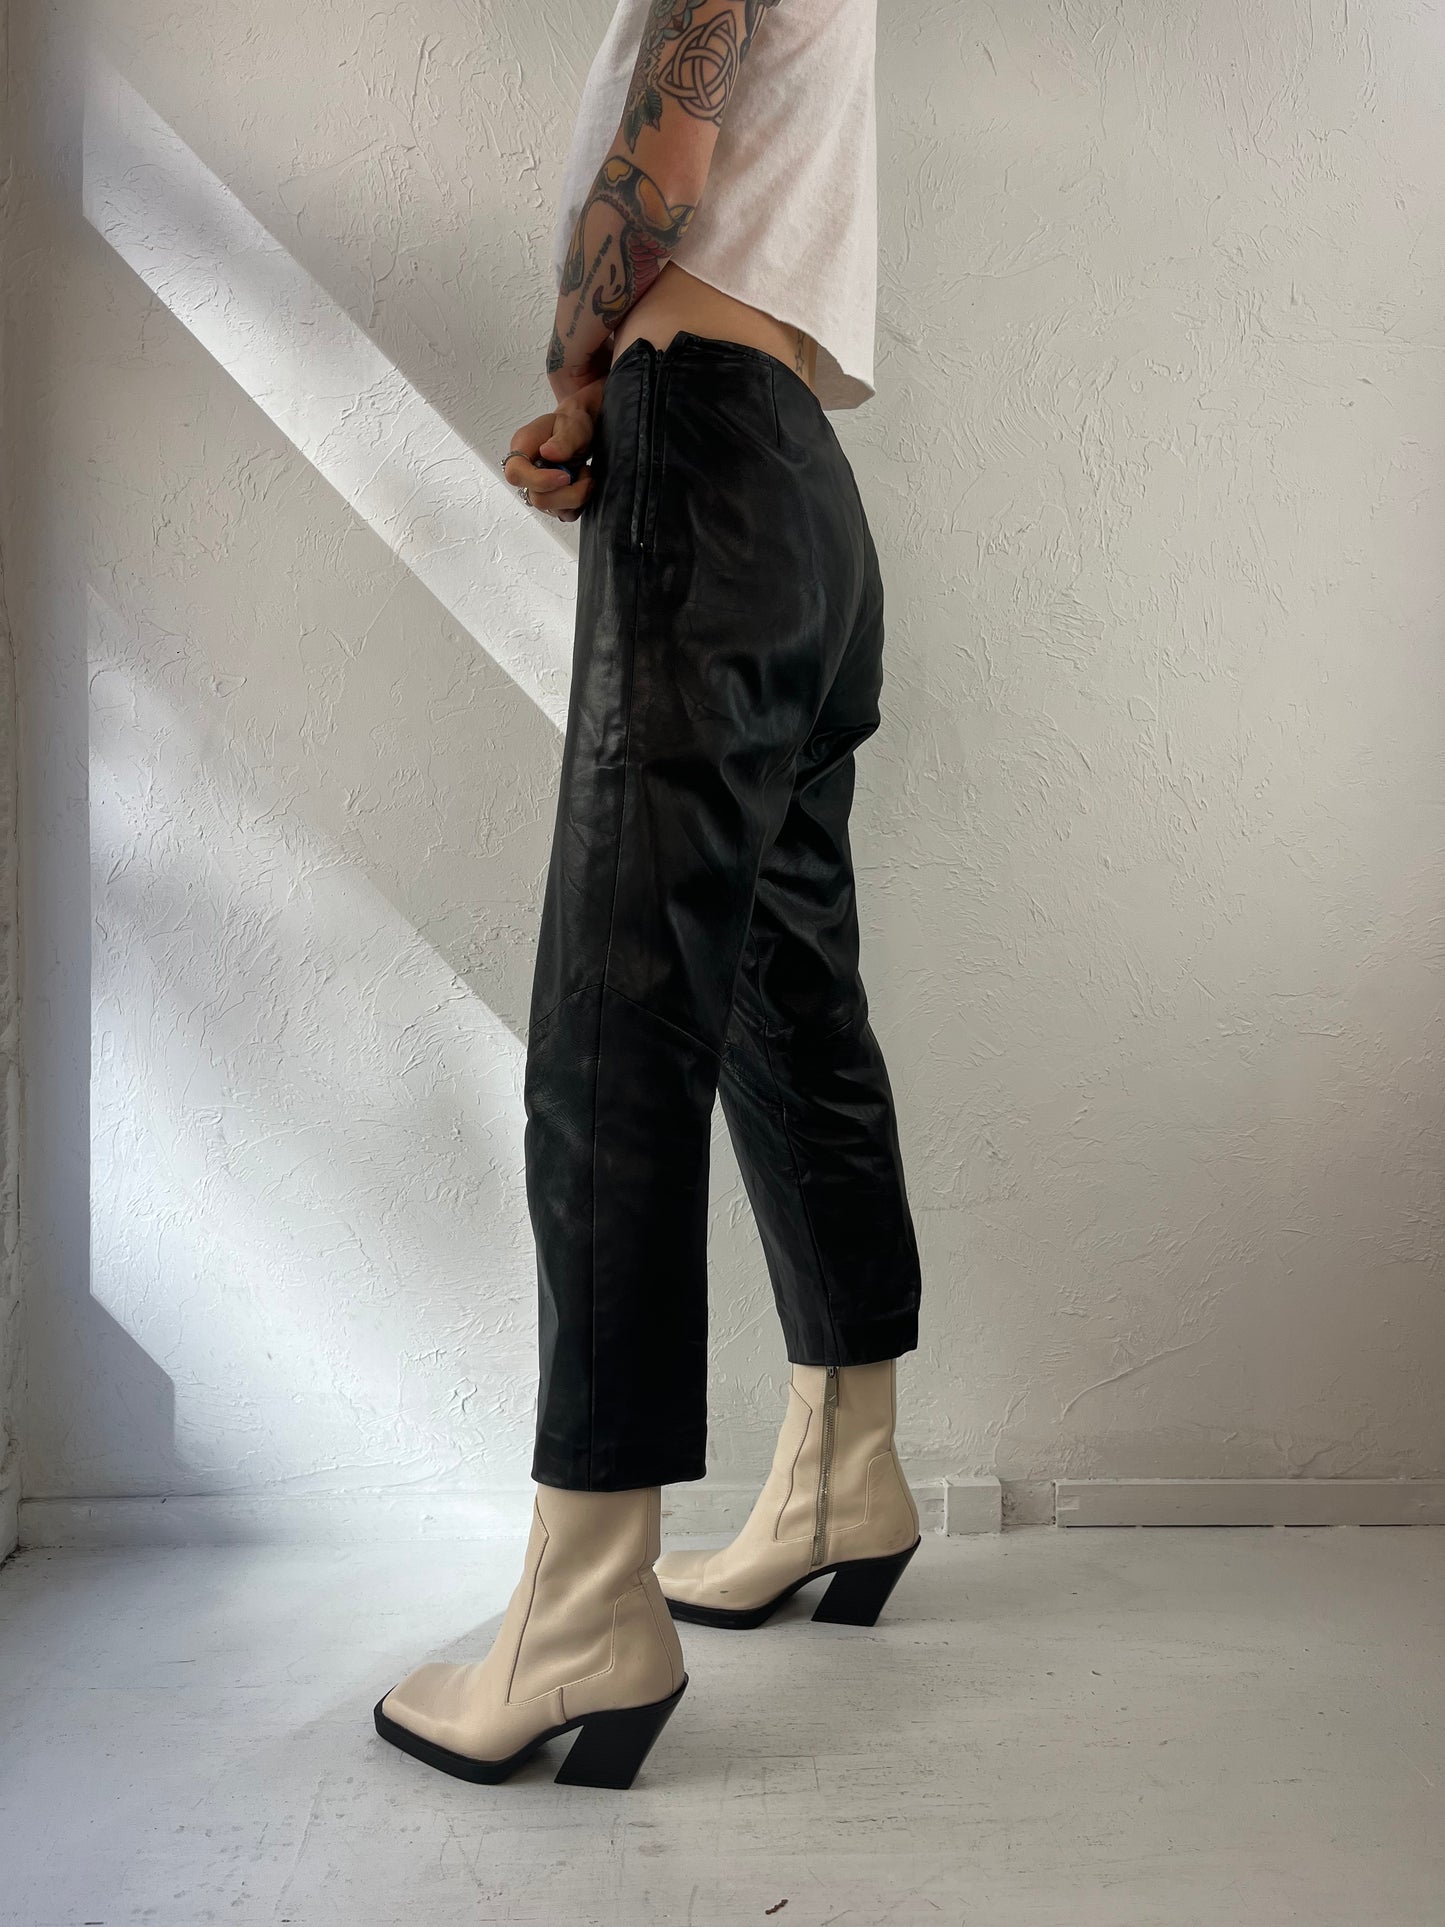 90s 'Danier' Black Leather Pants / 4